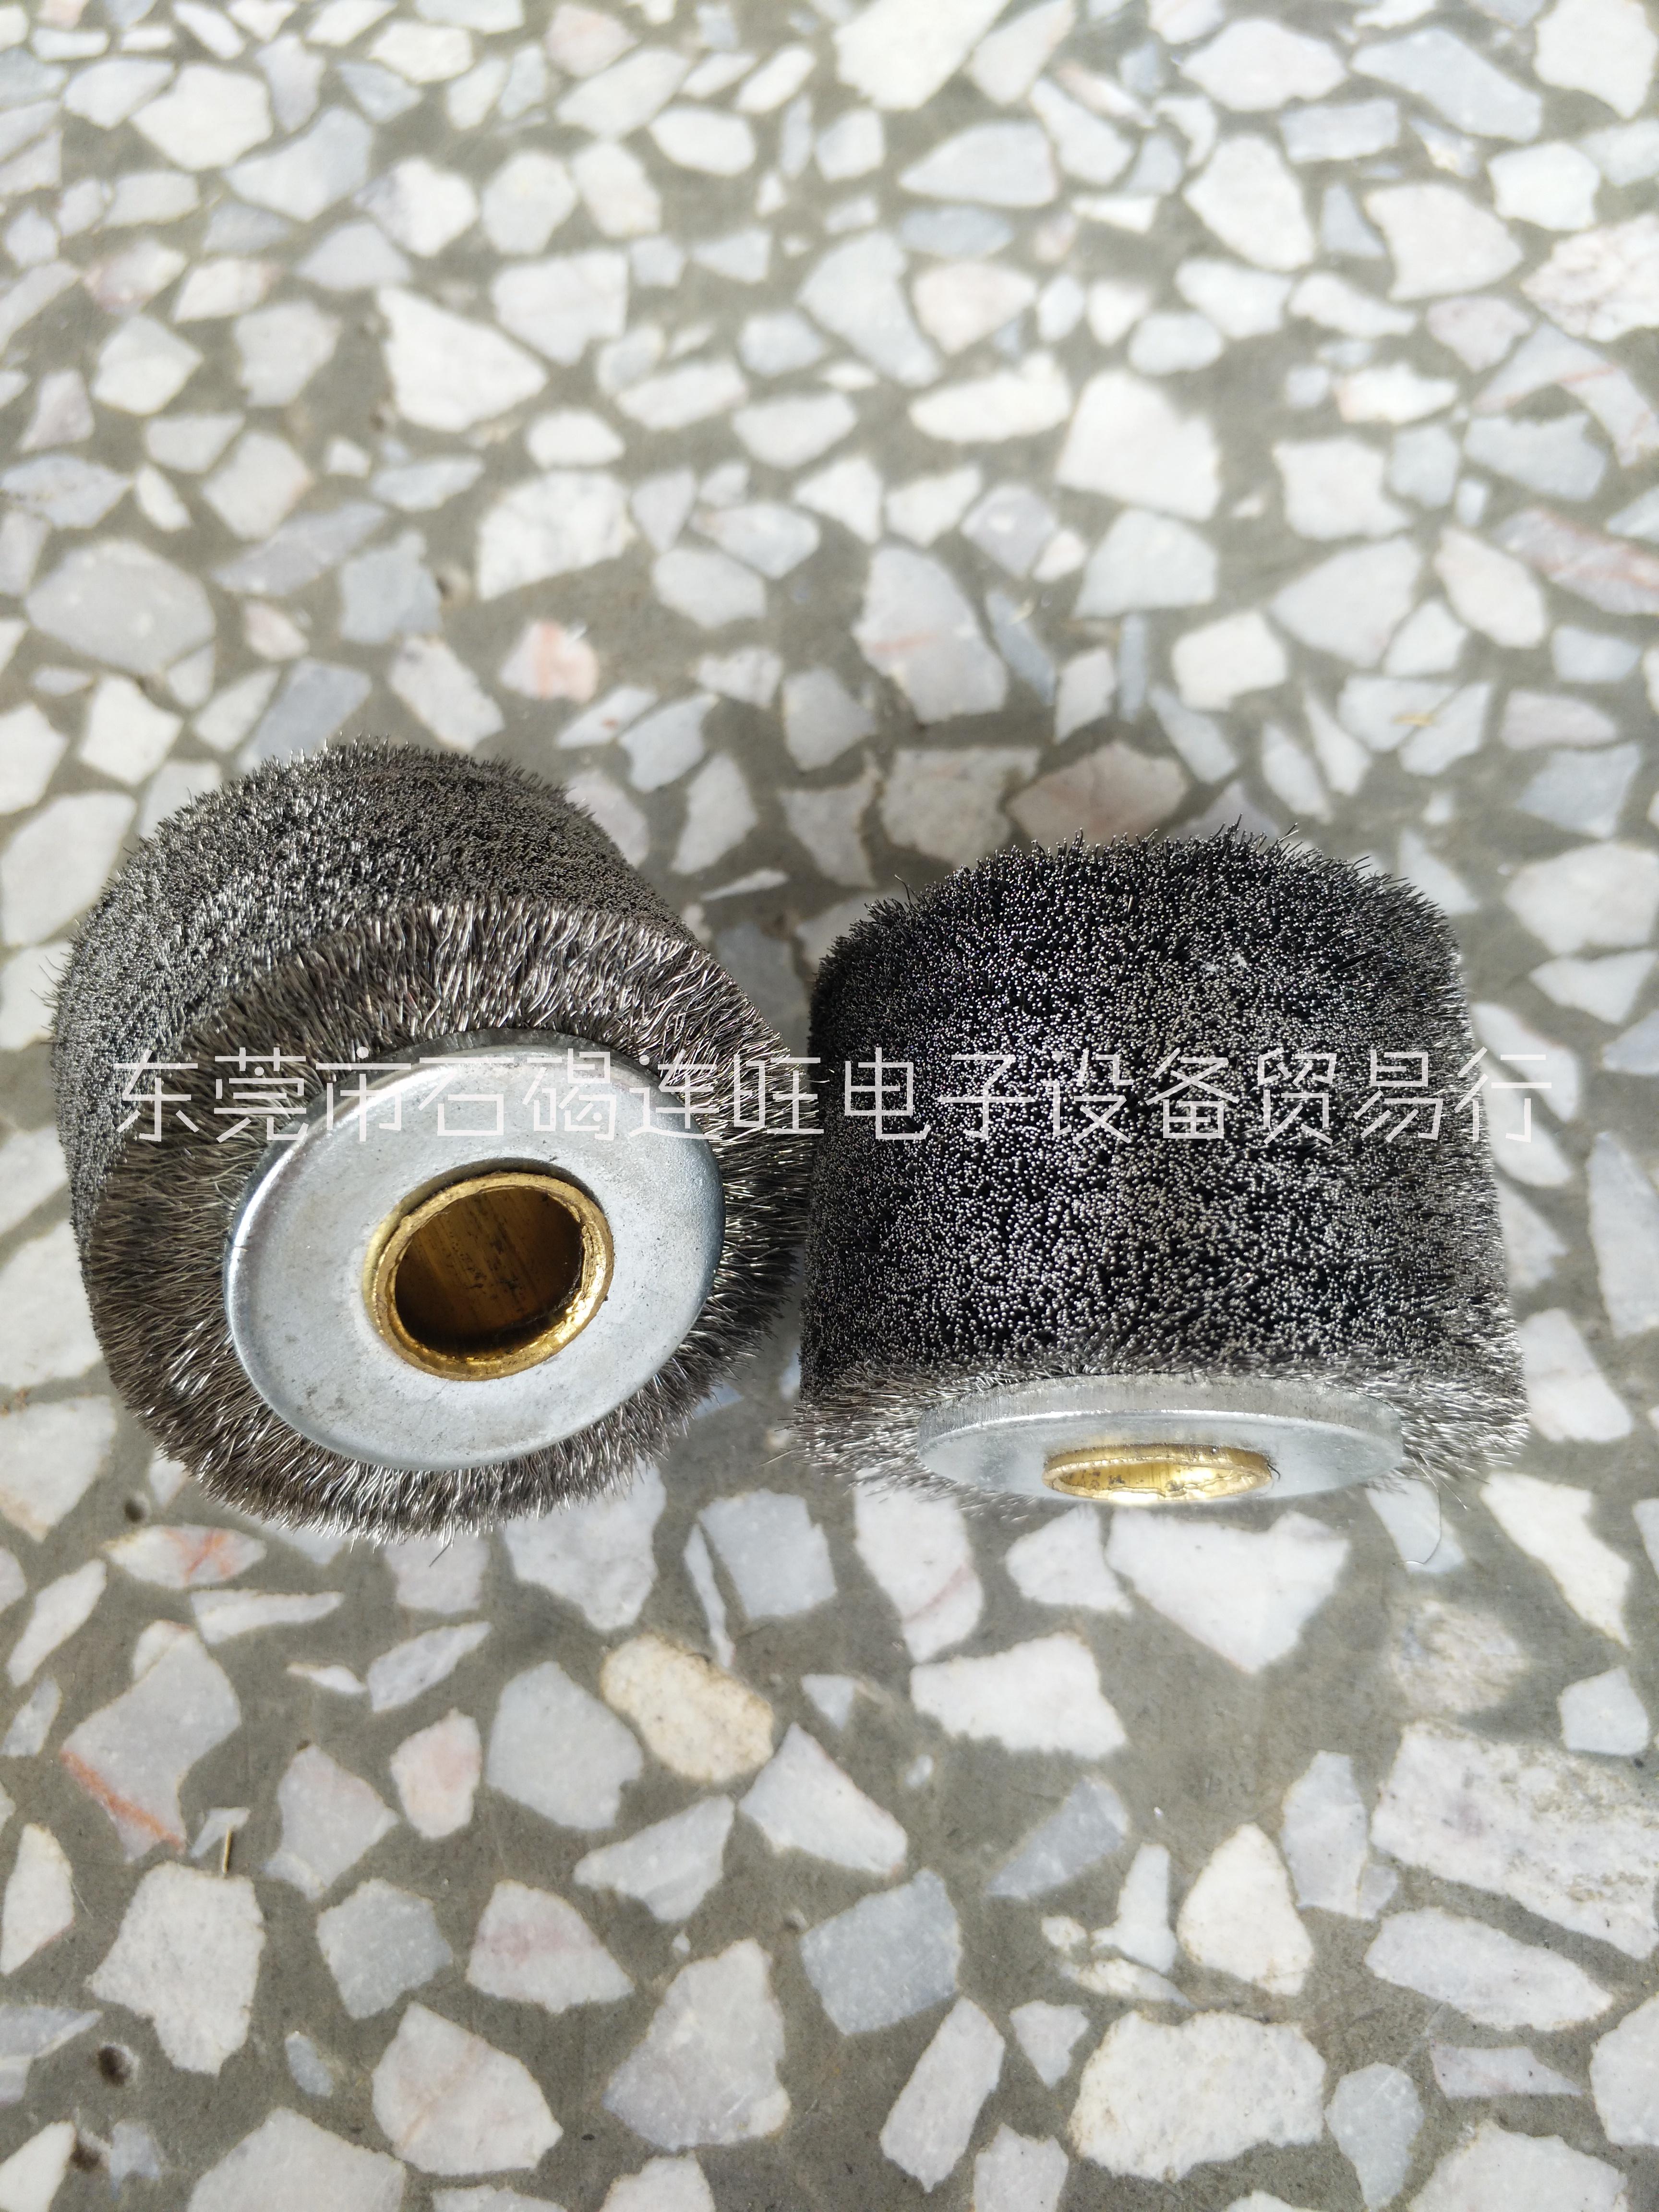 钢丝脱漆轮适用范围 广州一站式供应钢丝脱漆轮生产厂商哪家好-钢丝脱漆轮批发价格多少